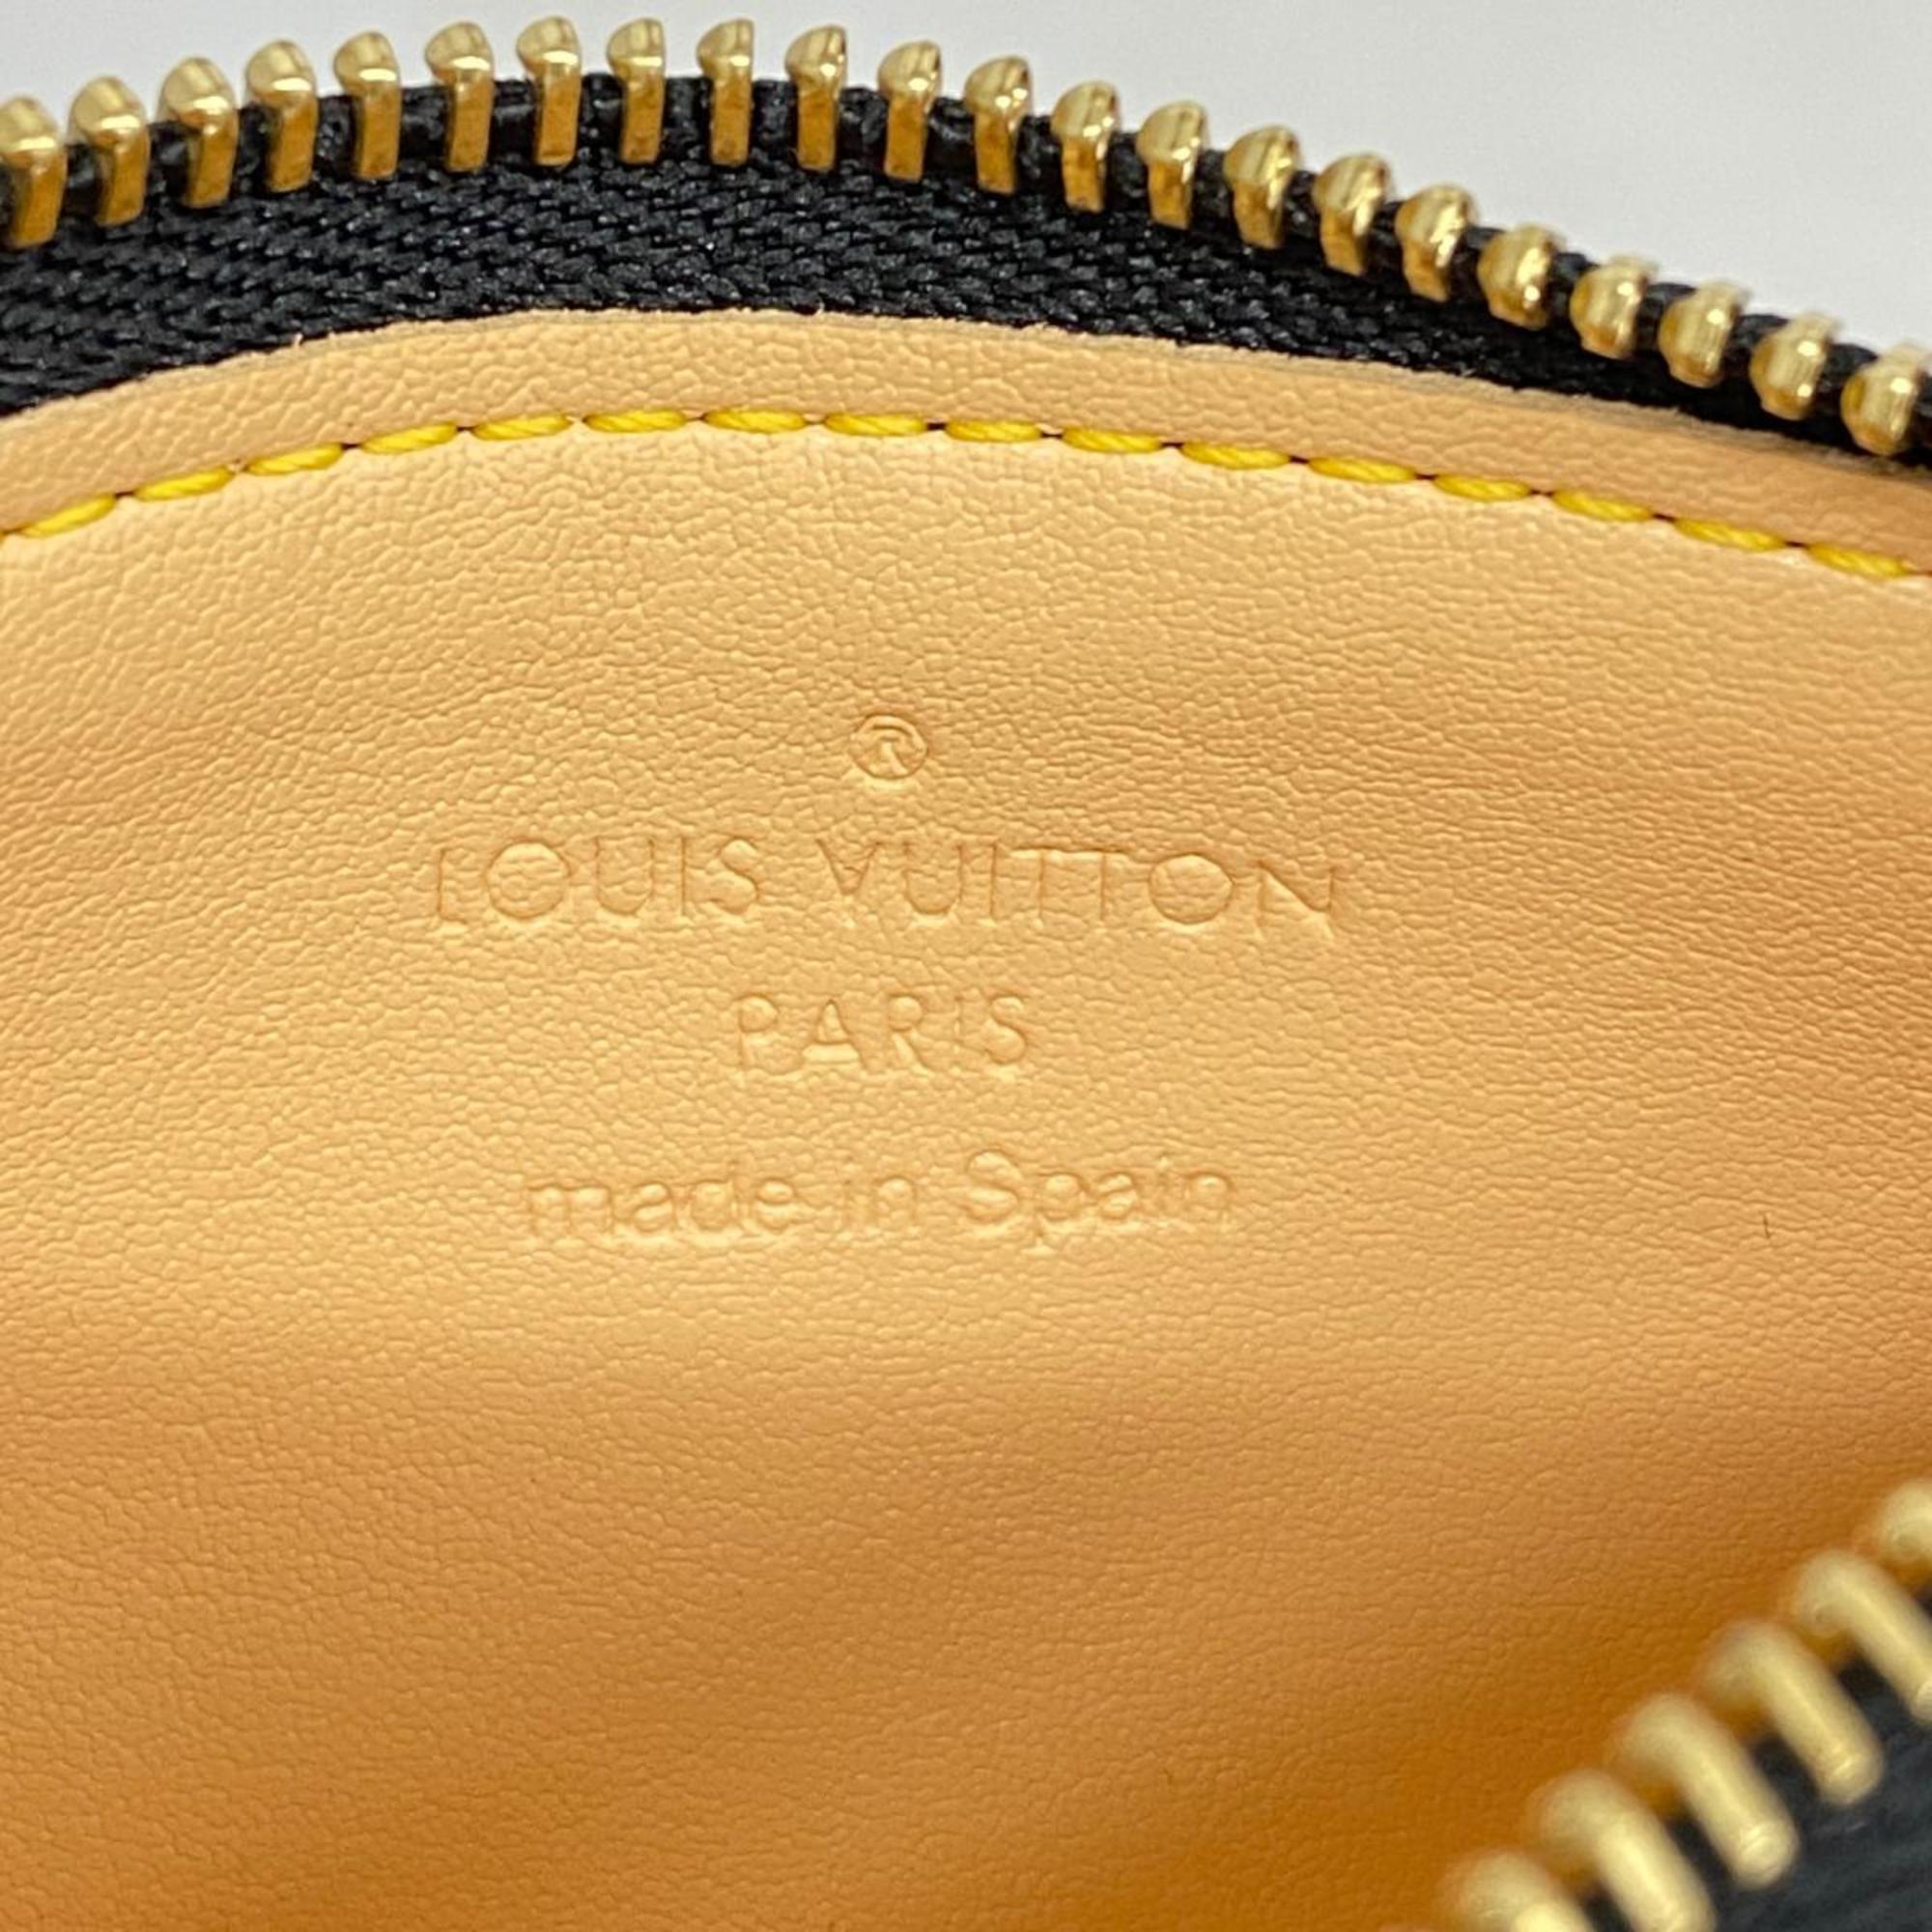 Louis Vuitton Wallet/Coin Case Monogram Multicolor Pochette Cle M92654 Noir Ladies